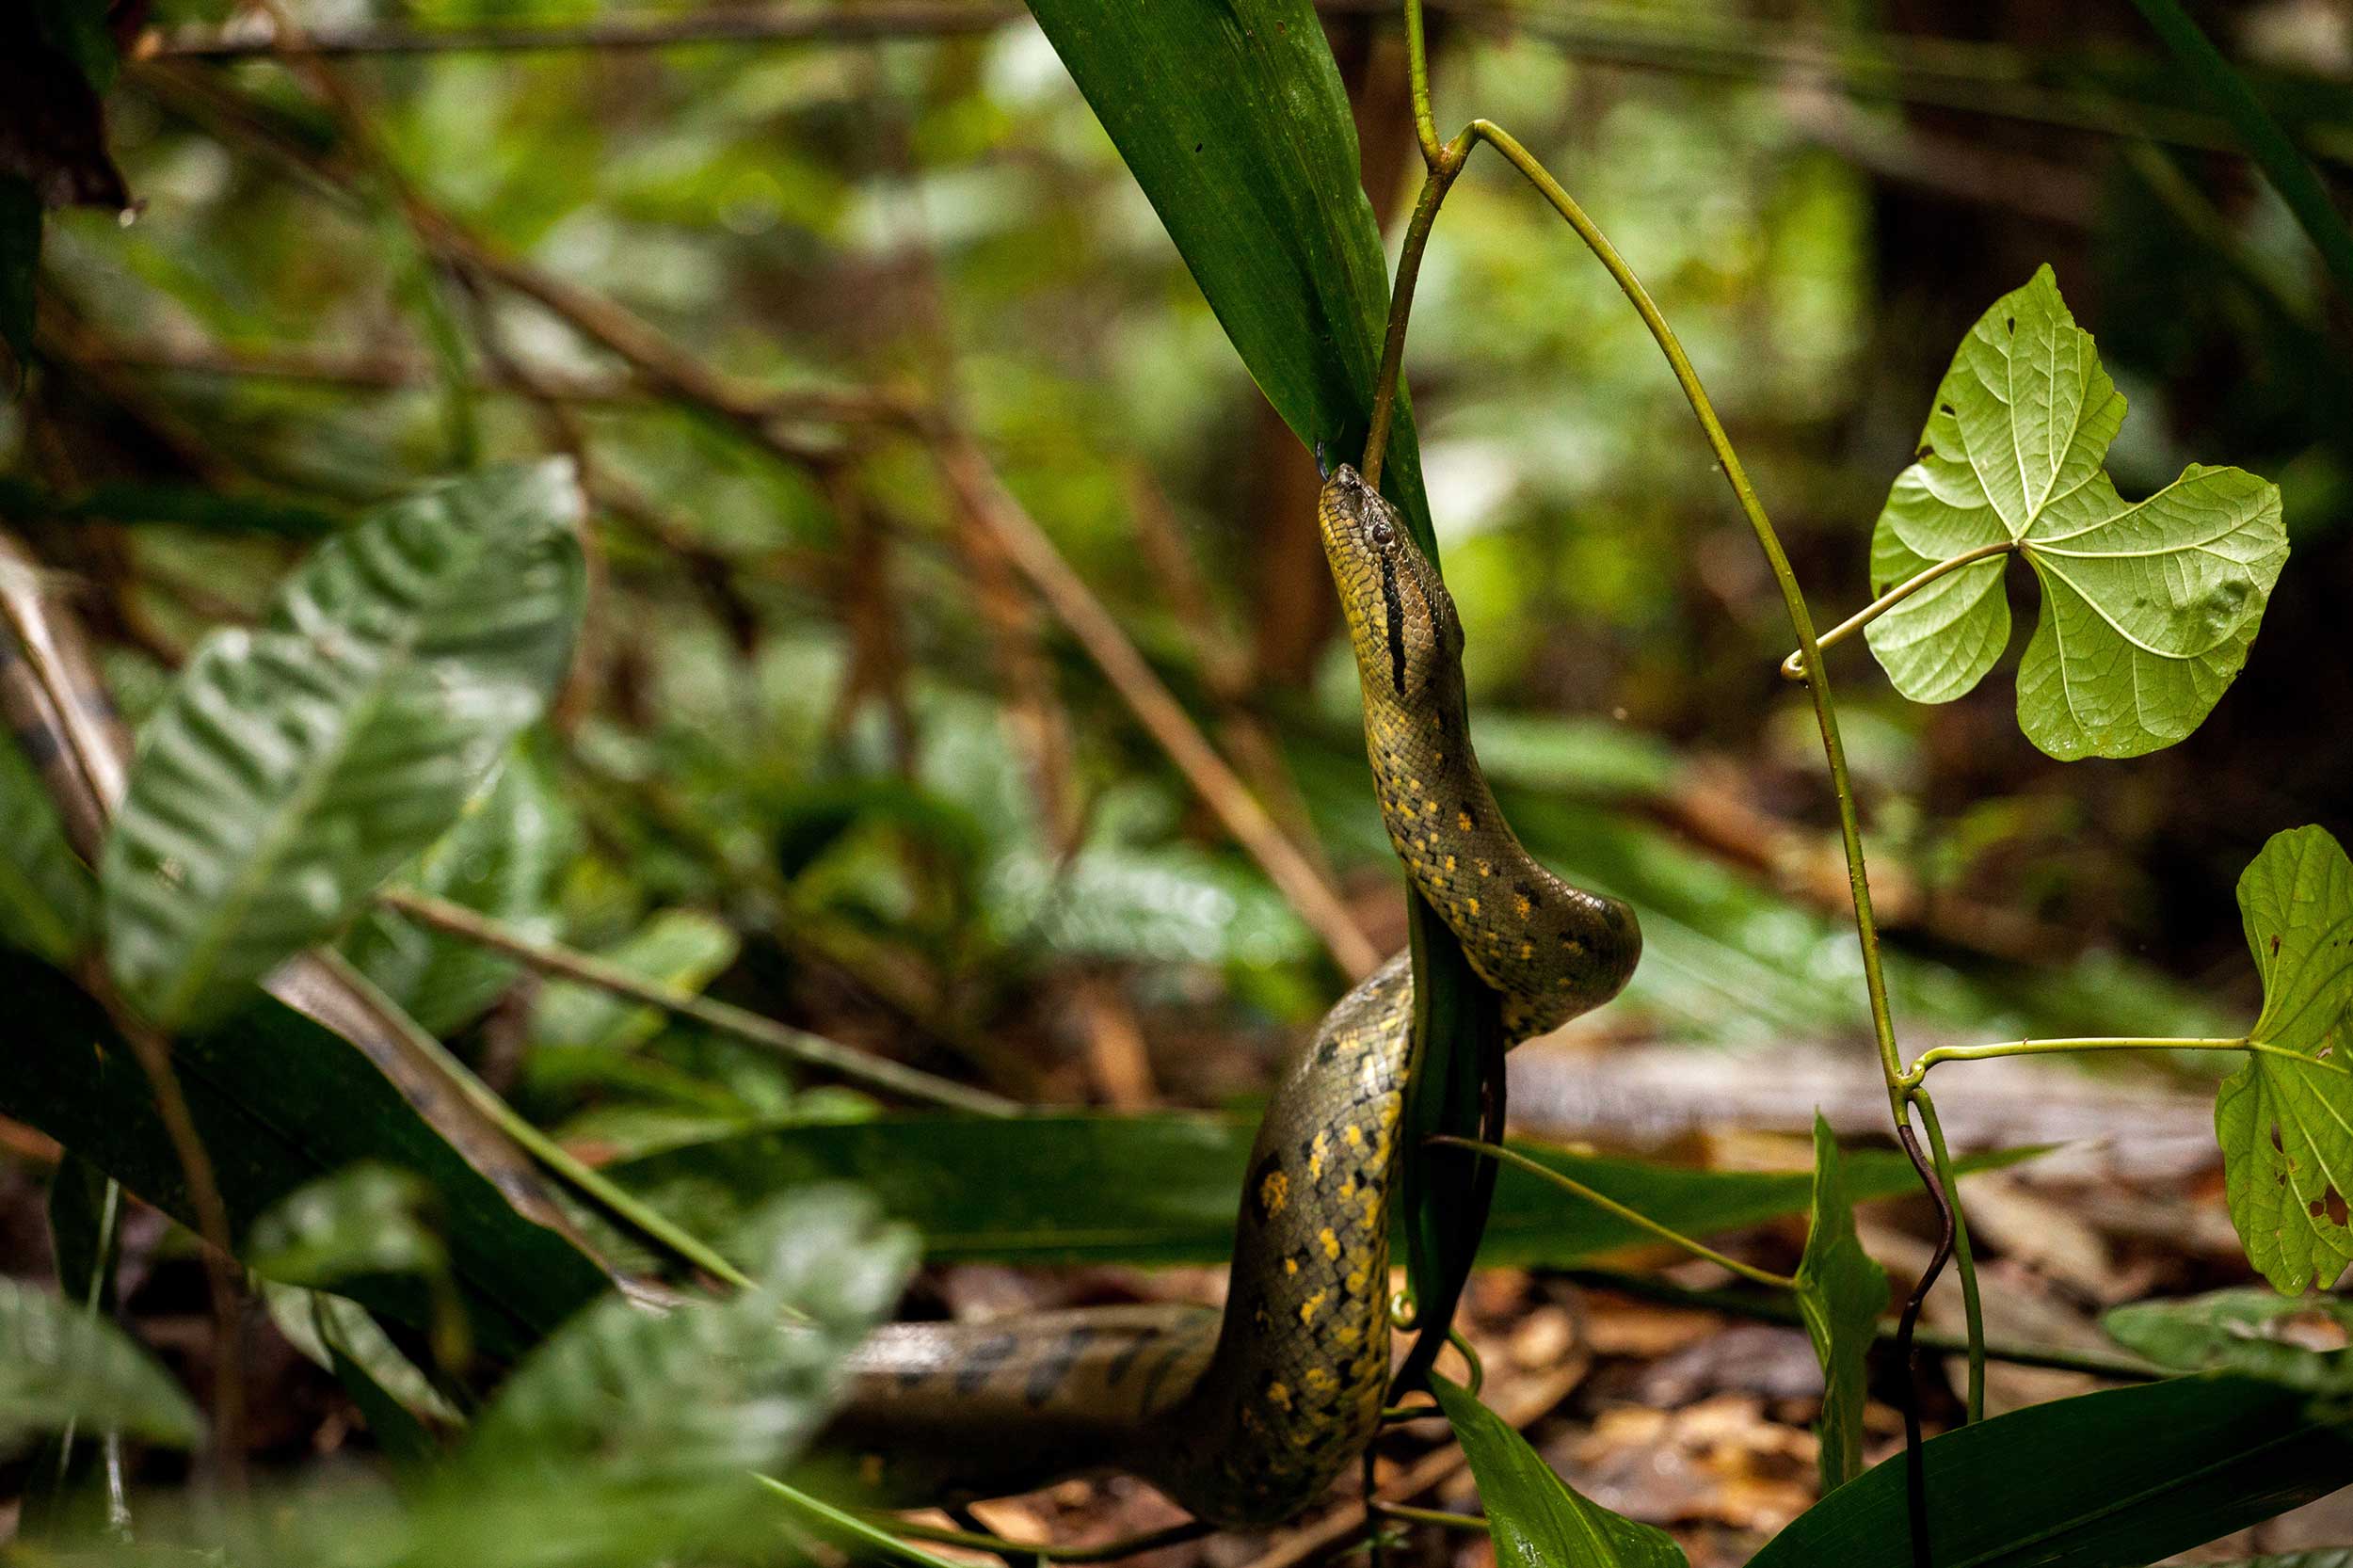 A Close Encounter With An Anaconda